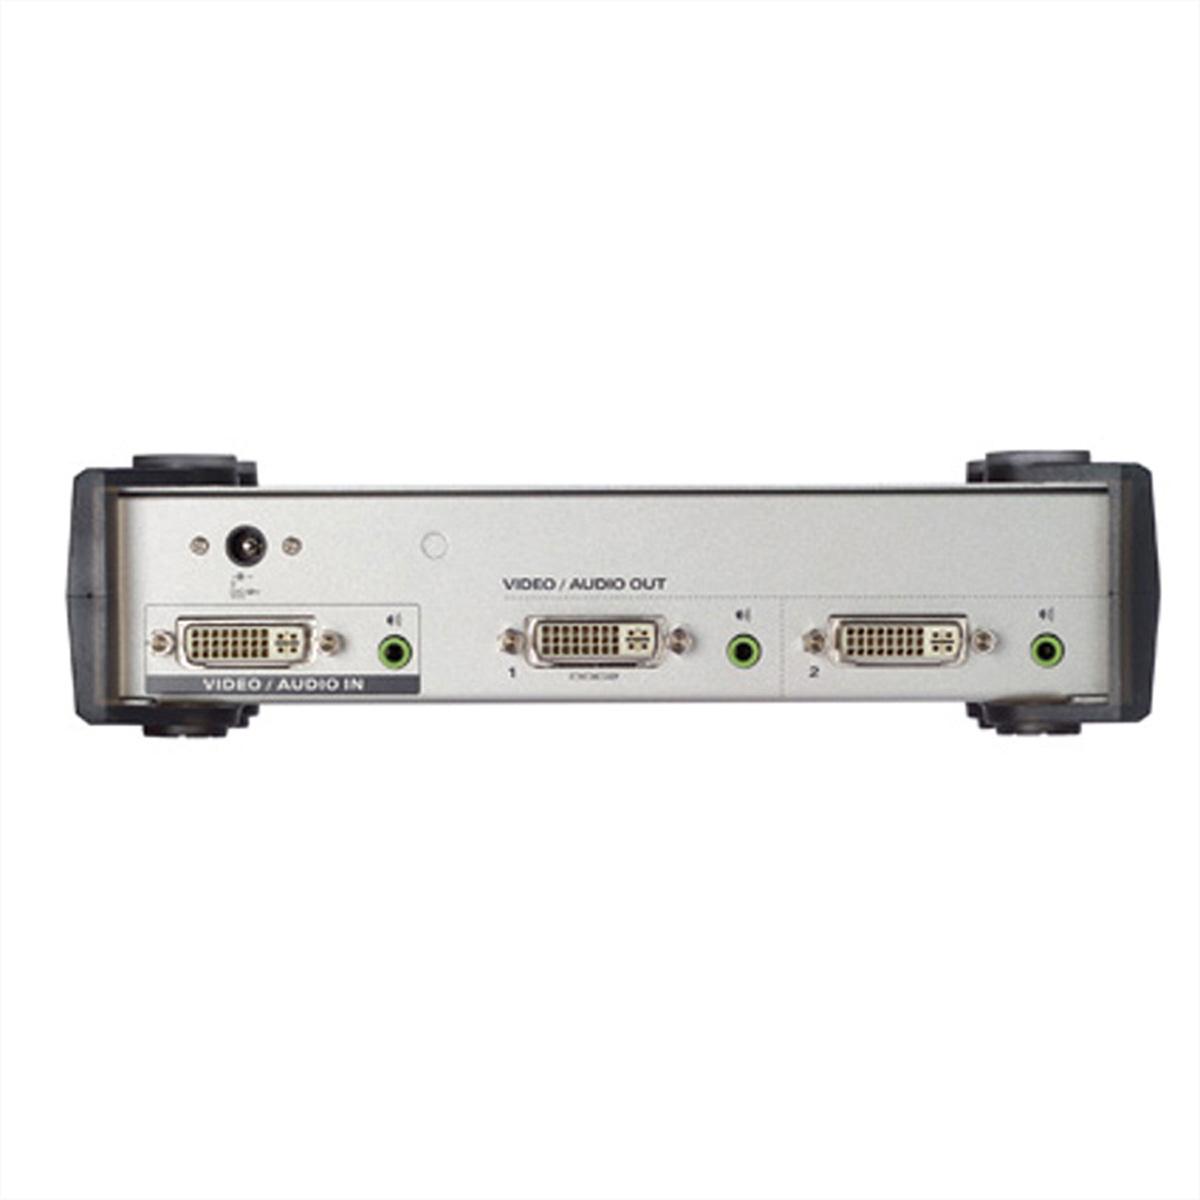 ATEN VS162 DVI DVI-Video-Splitter 2fach Video-/Audiosplitter